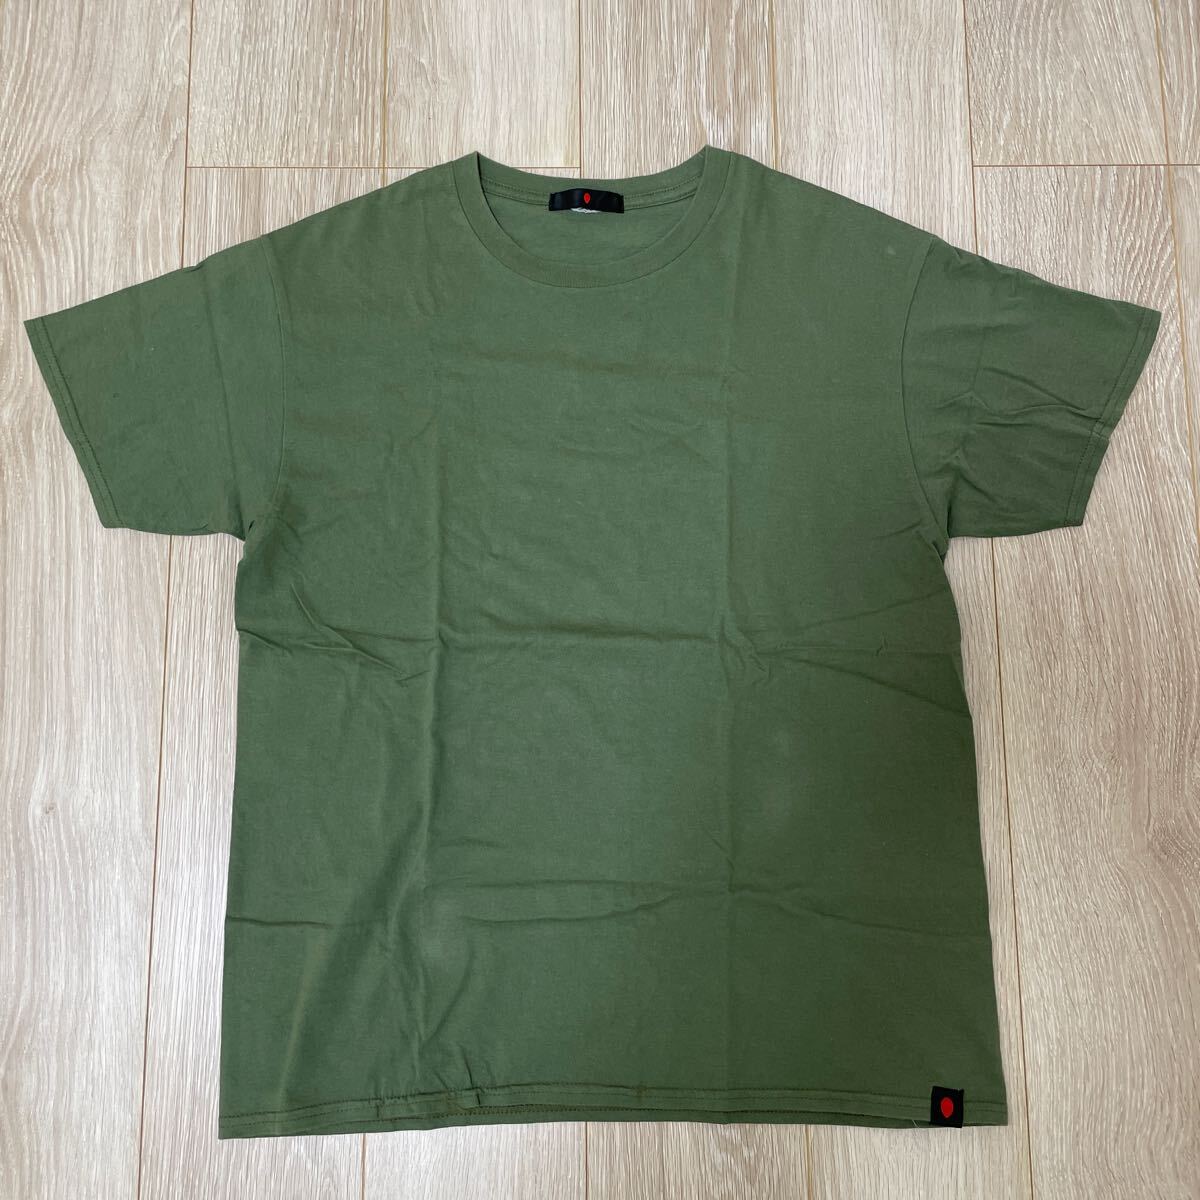 【着用僅か】gentemstick NISEKO SNOWSURF SHOP TEE 5.3OZ ゲンテンスティック Tシャツ XLサイズ グリーン 半袖Tシャツの画像1